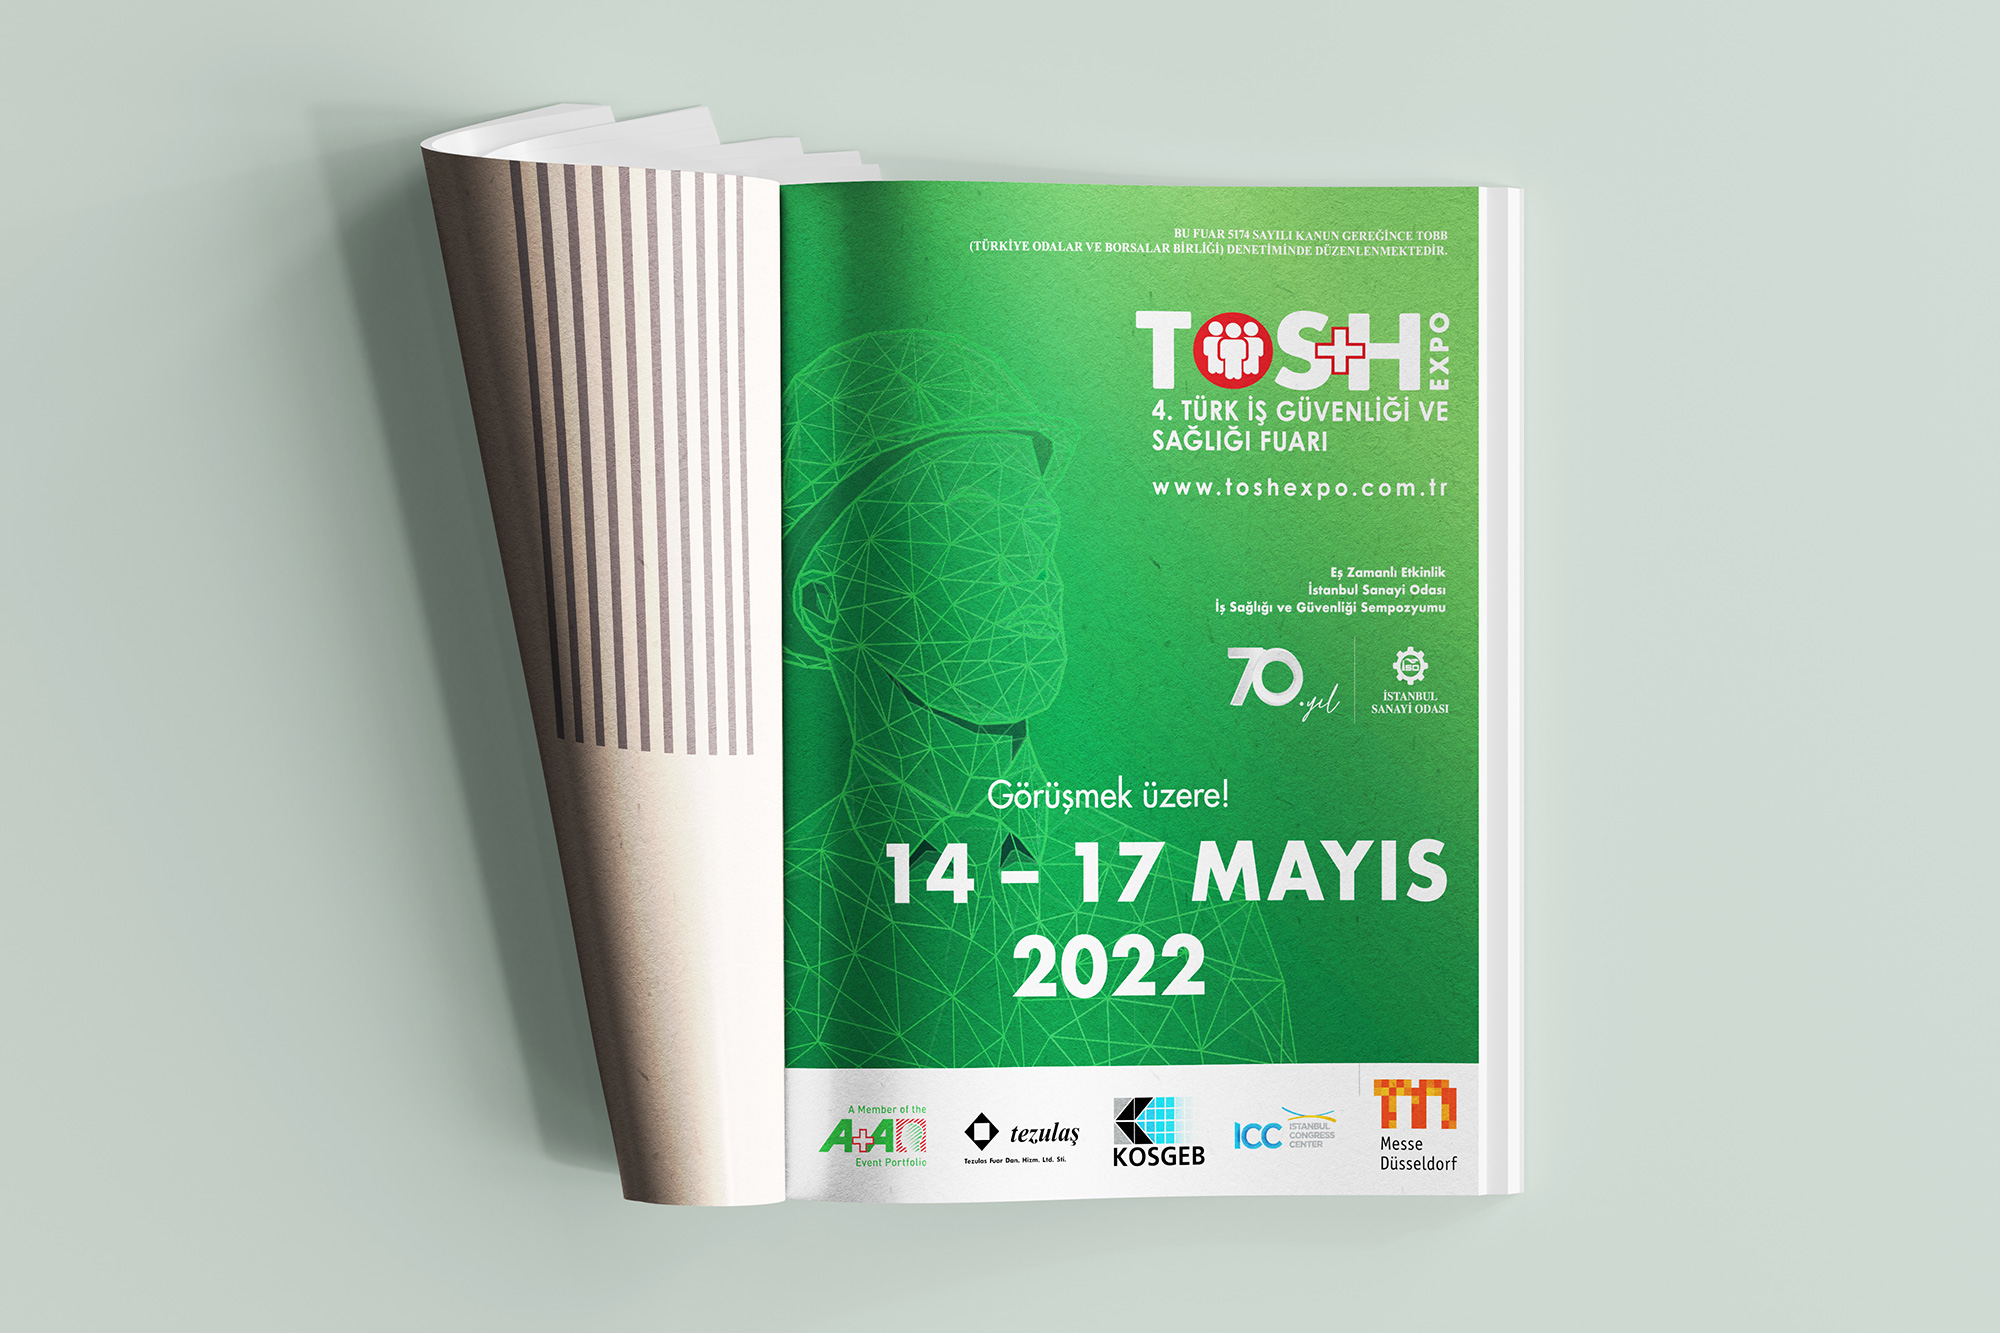 Tezulaş Messe Dusseldorf TOS+H Expo 2022 Fuar Organizasyon Tasarımları